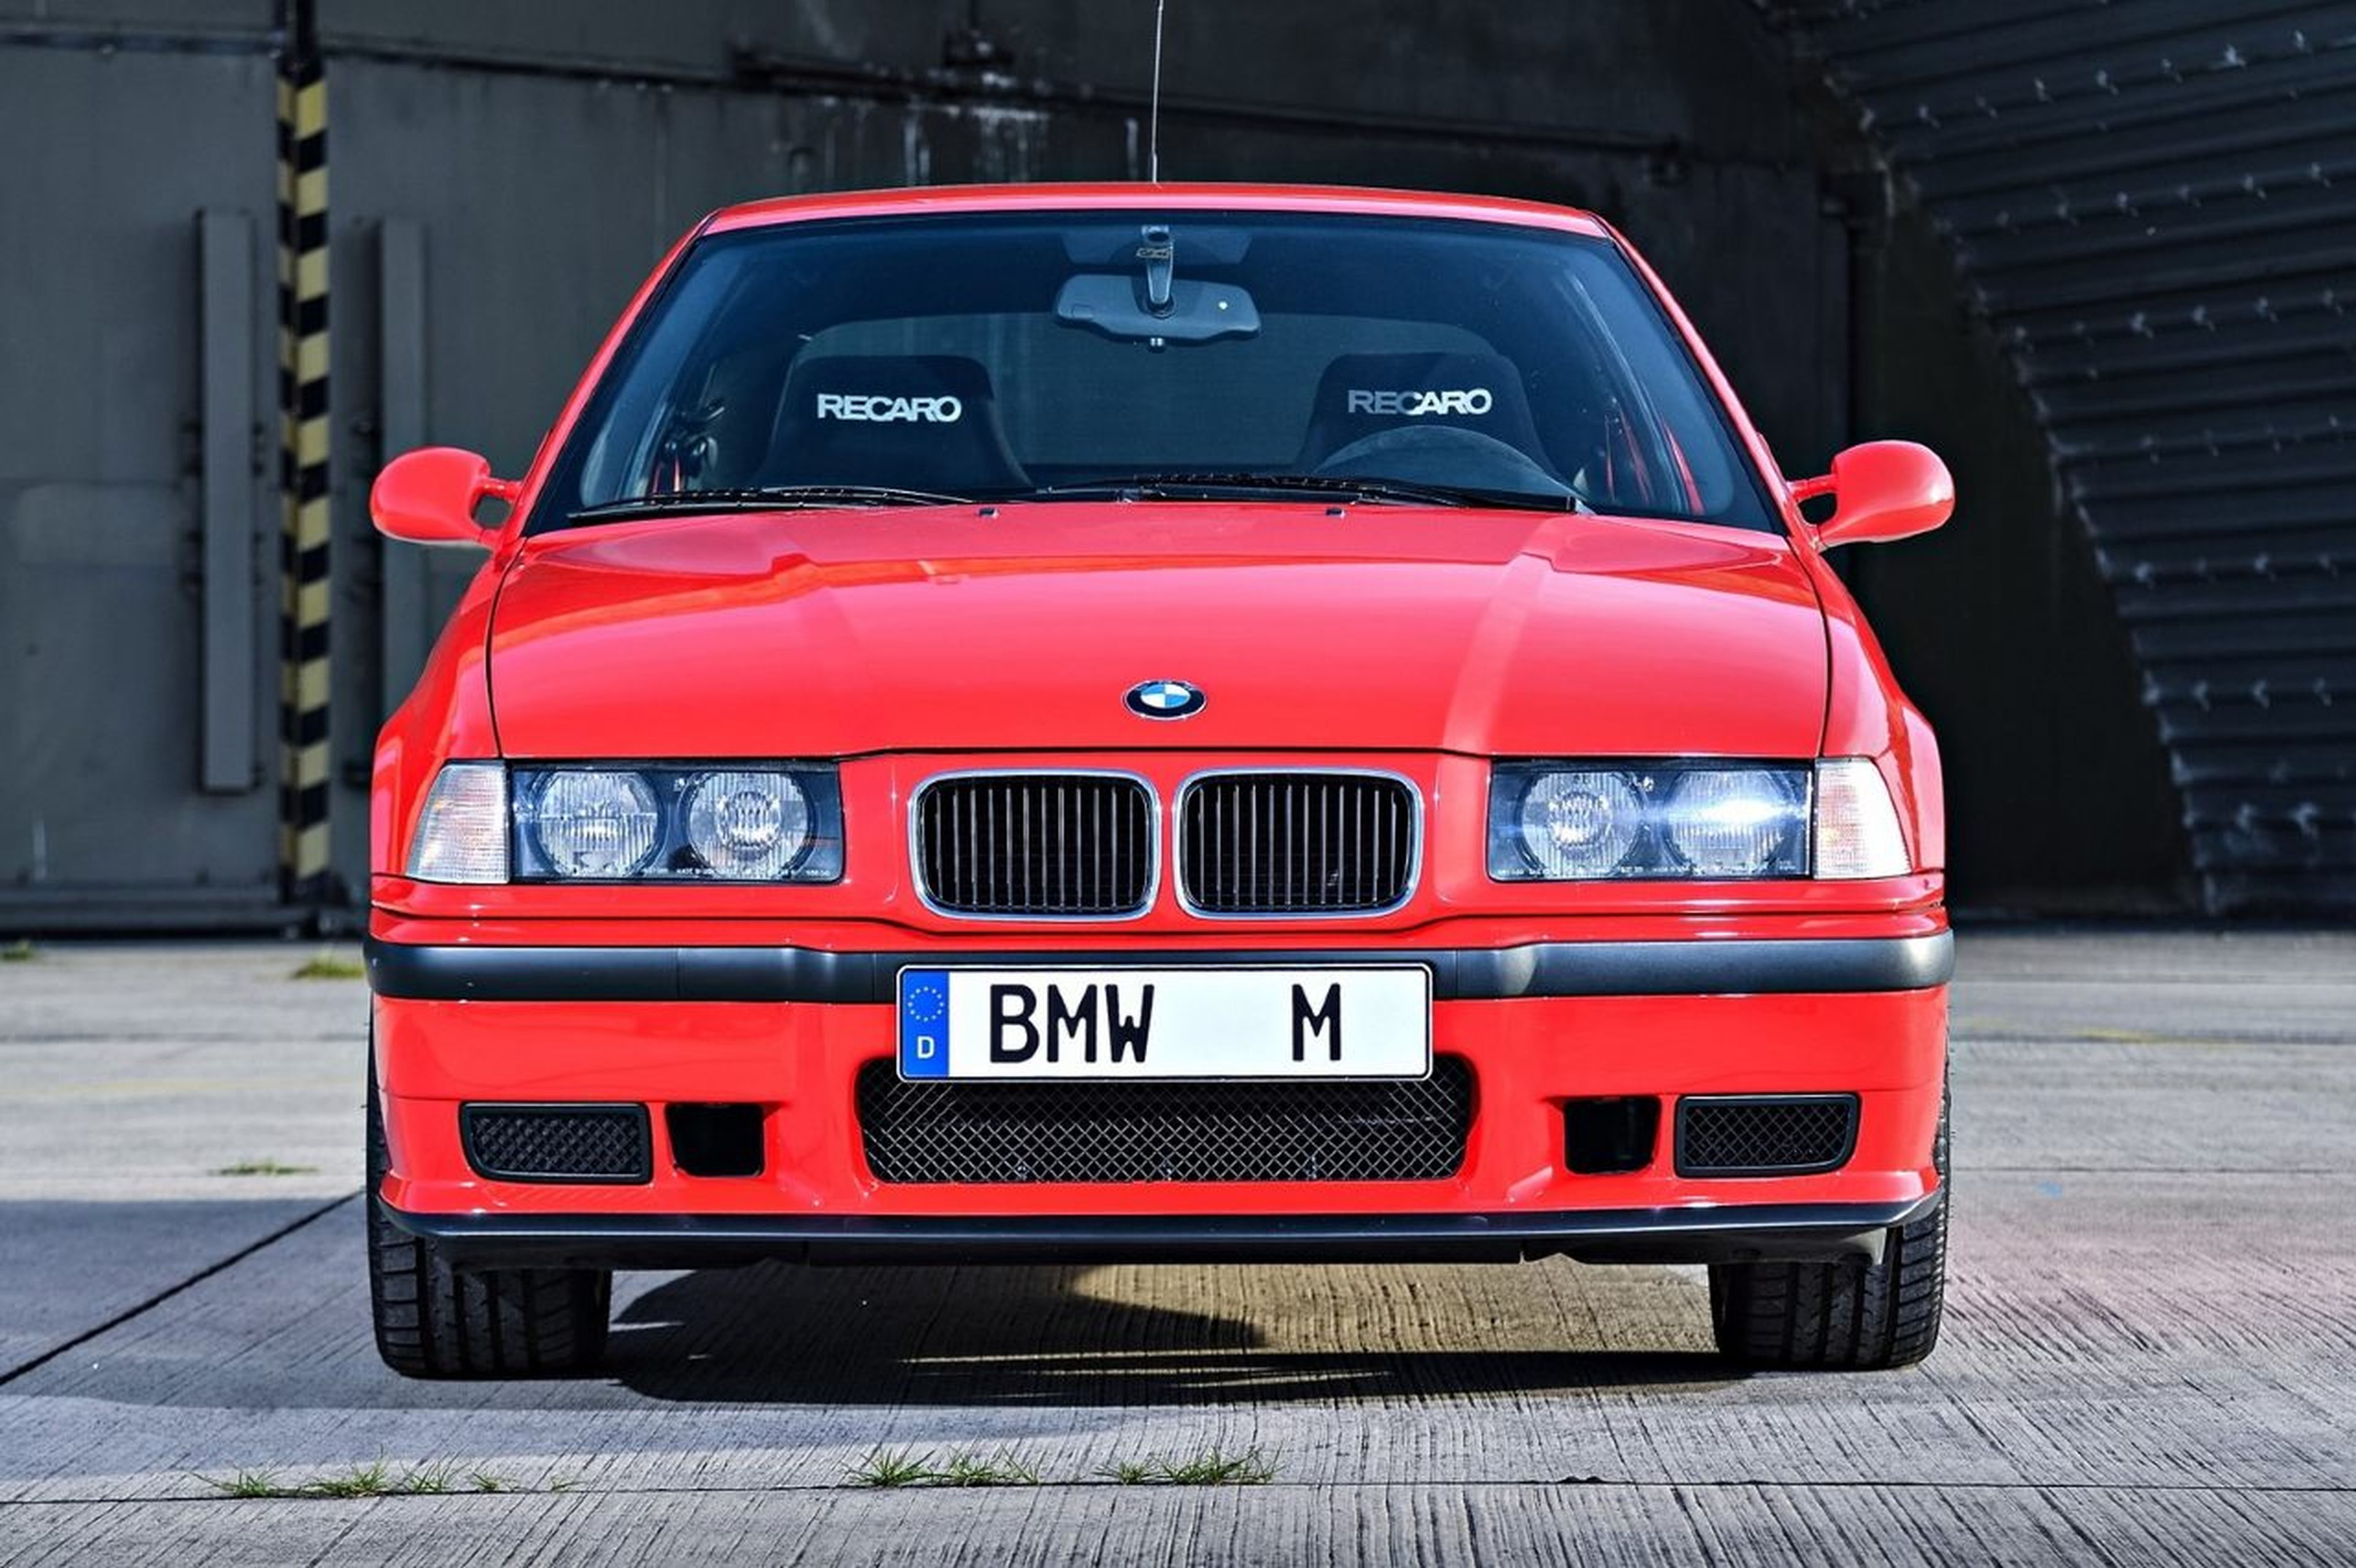 BMW E36 M3 Compact